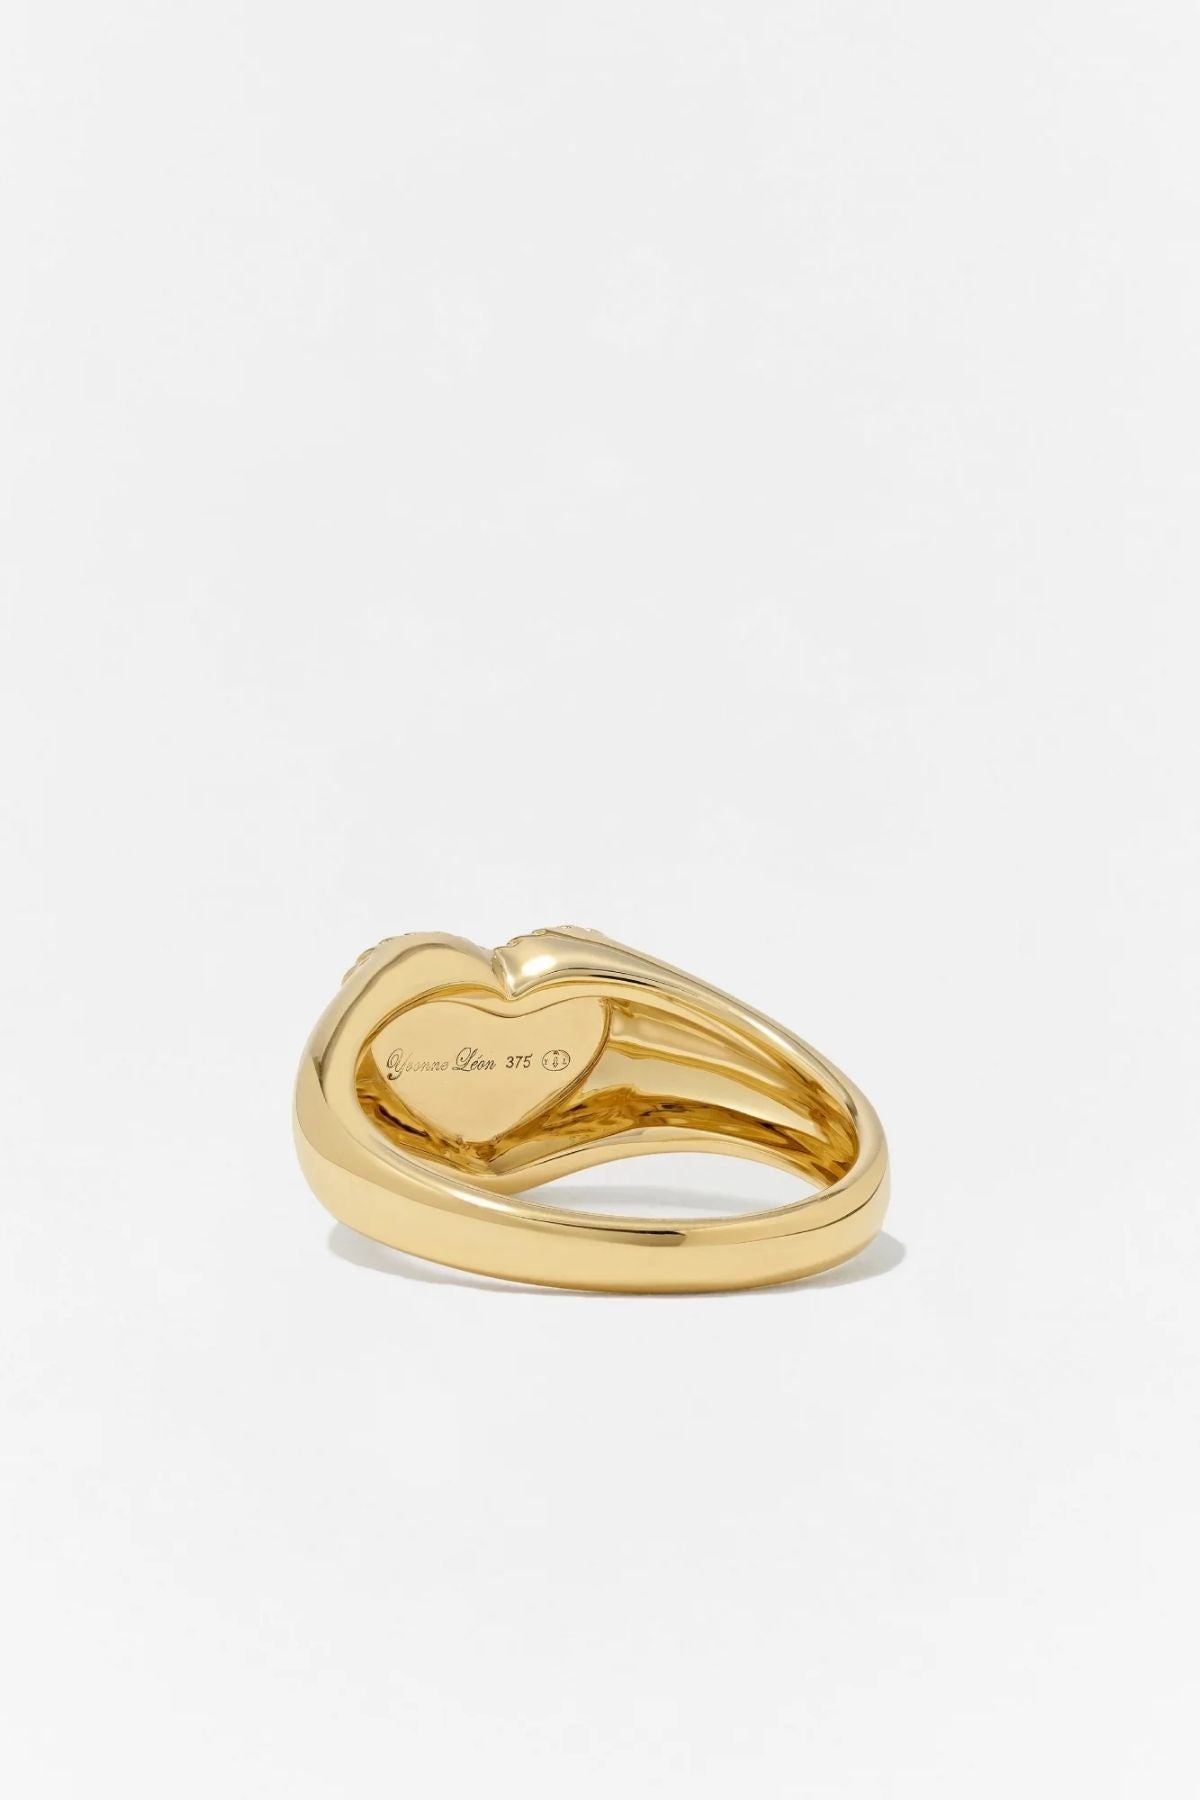 Yvonne Léon Baby Chevaliere Malachite Heart Ring - Yellow Gold